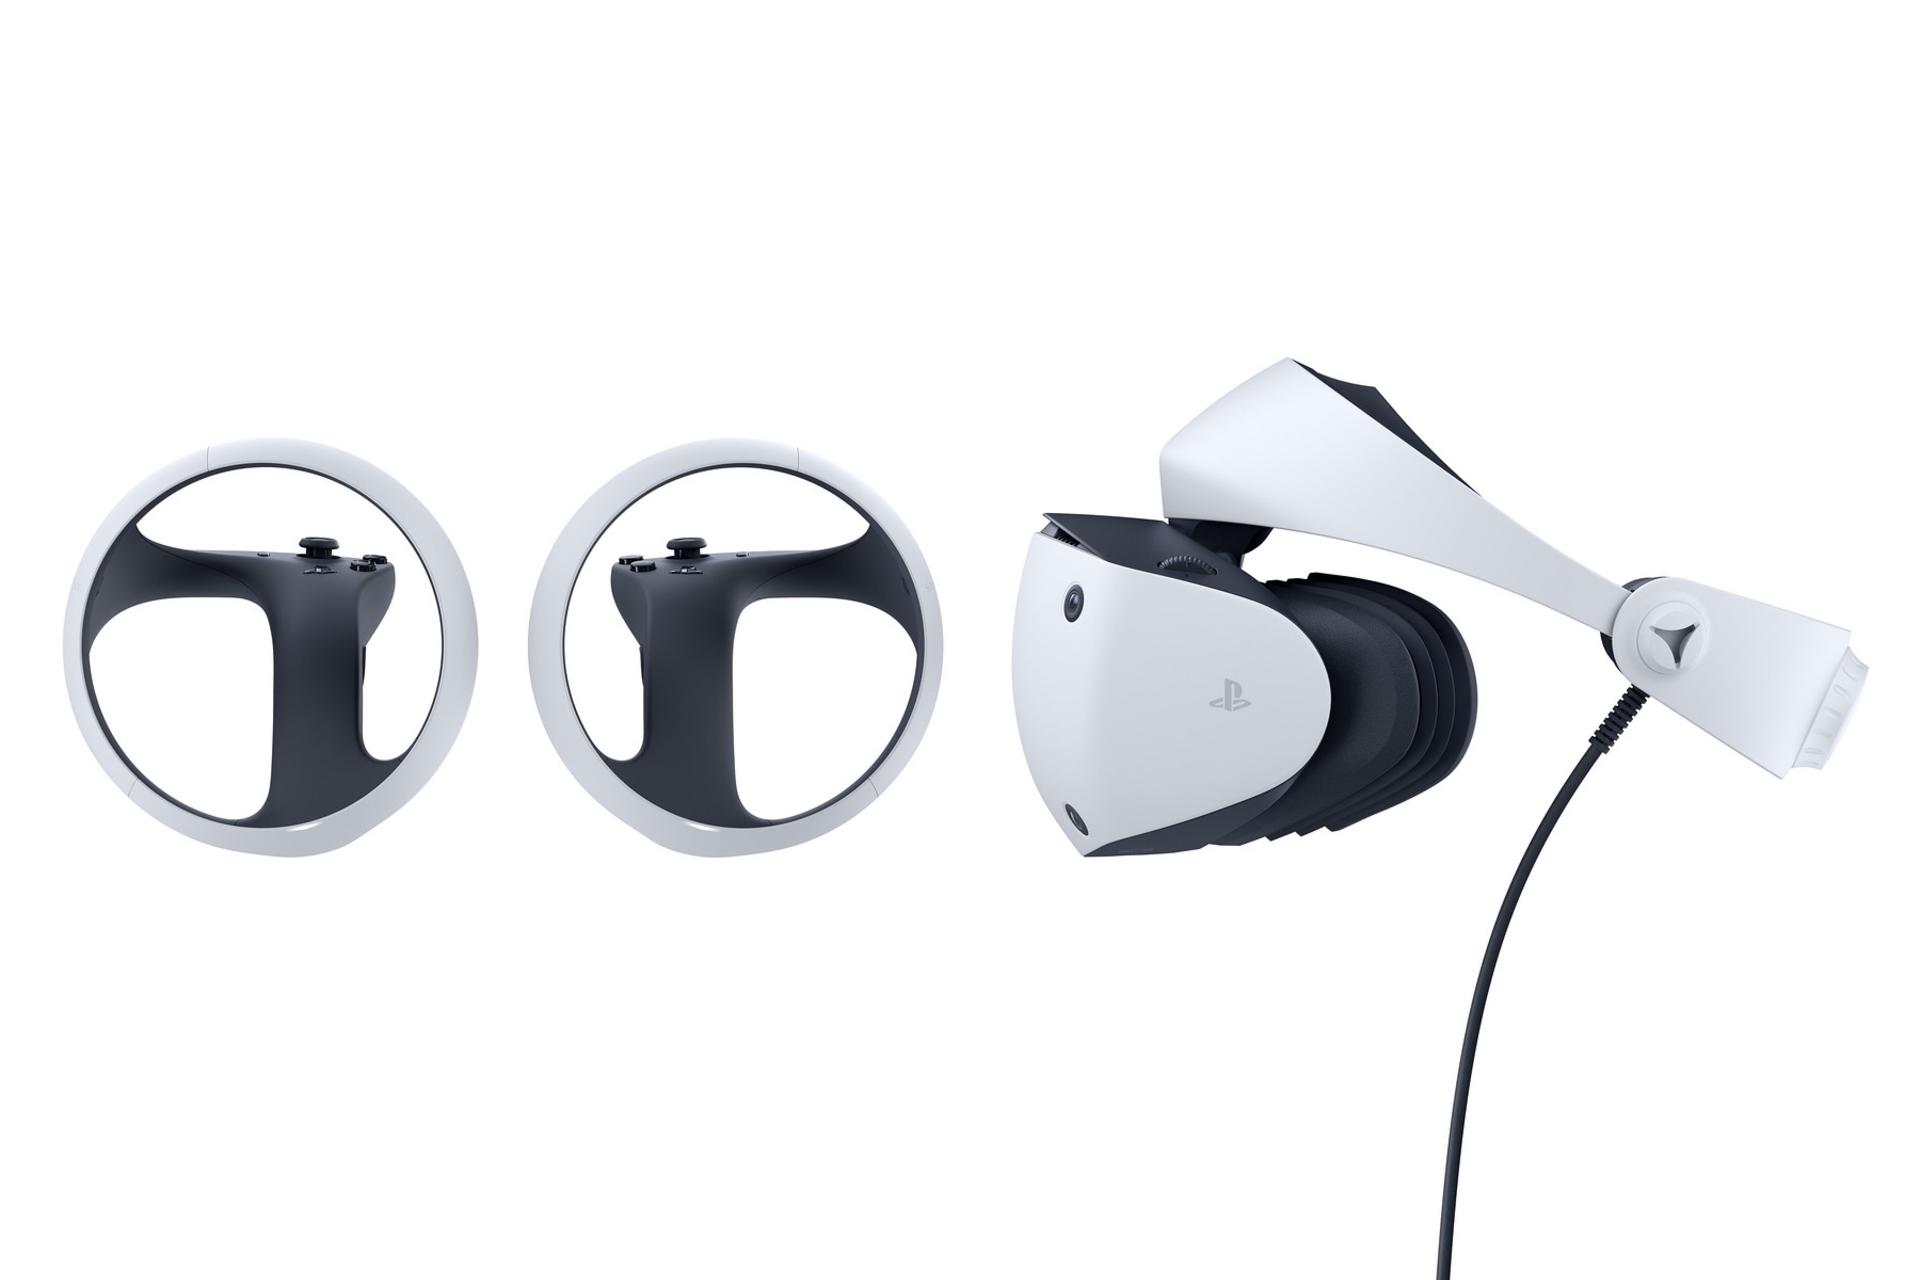 مرجع متخصصين ايران نماي جانبي Sony PlayStation VR2 / واقعيت مجازي سوني پلي استيشن VR2